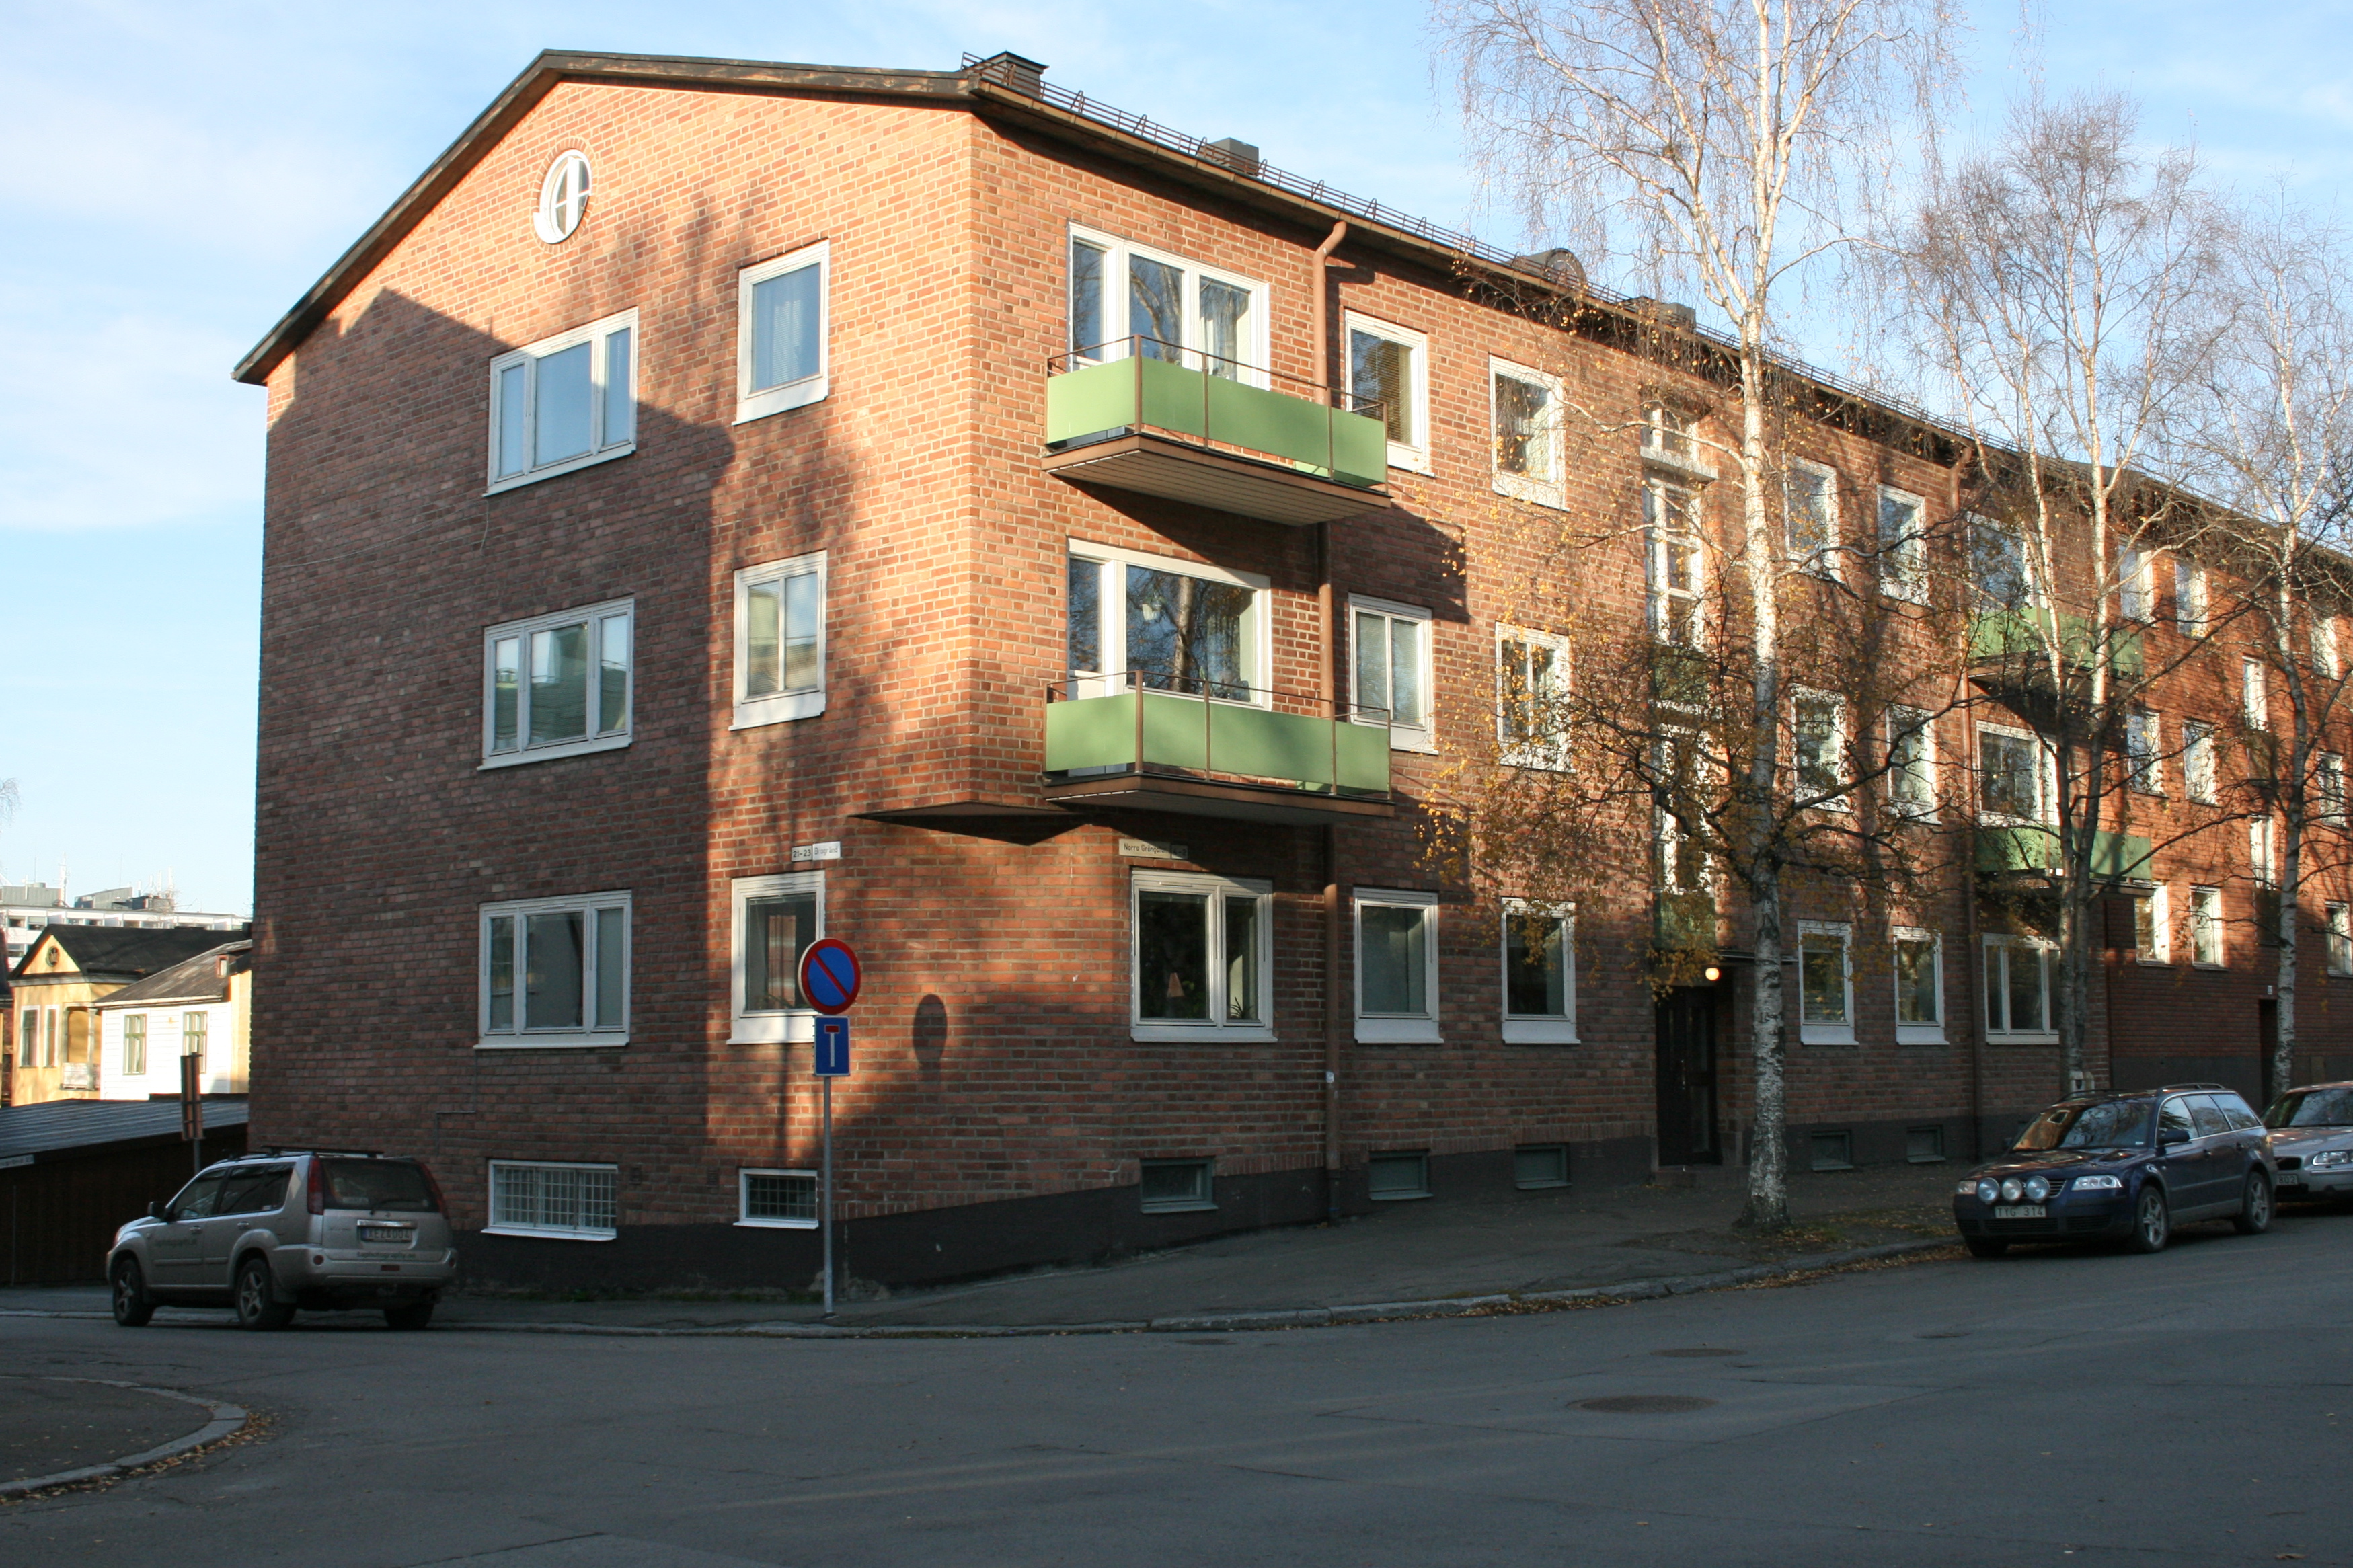 Bostadshus mot Norra Gröngatan, med originalbalkonger och avfasat hörn.